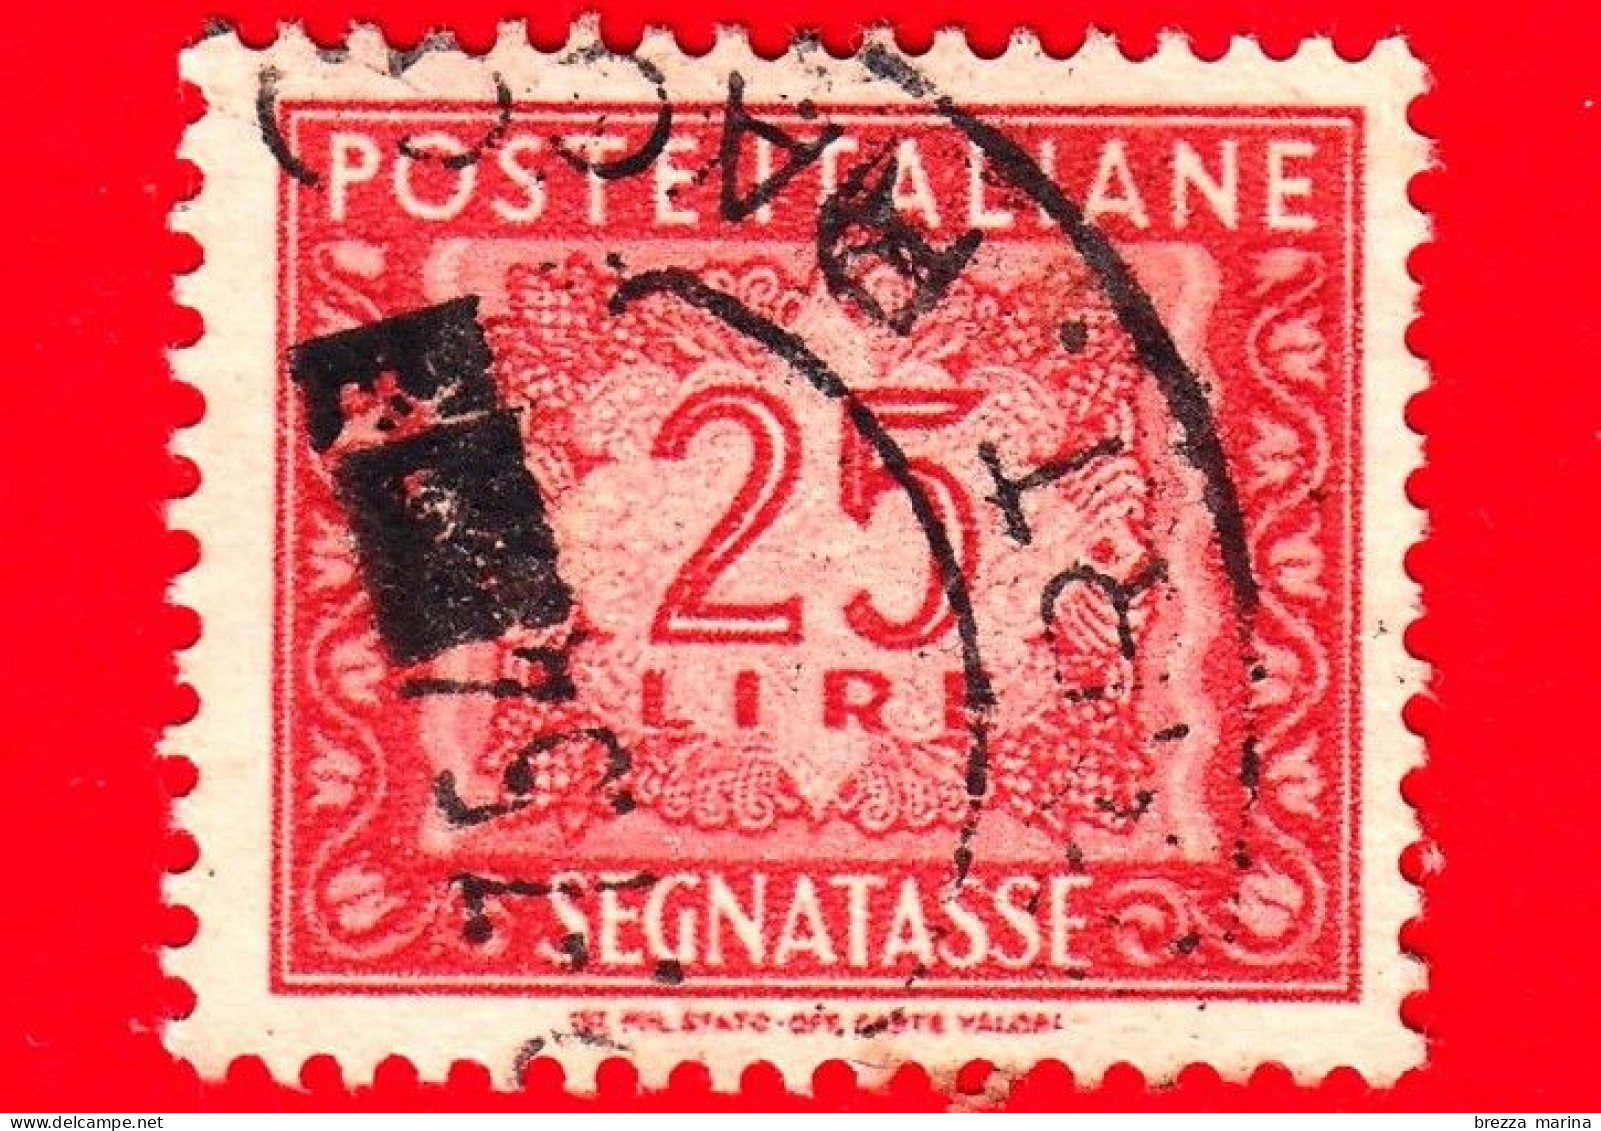 ITALIA - Usato - 1947 - Segnatasse - Cifra E Decorazioni, Filigrana Ruota - 25 L. - Taxe